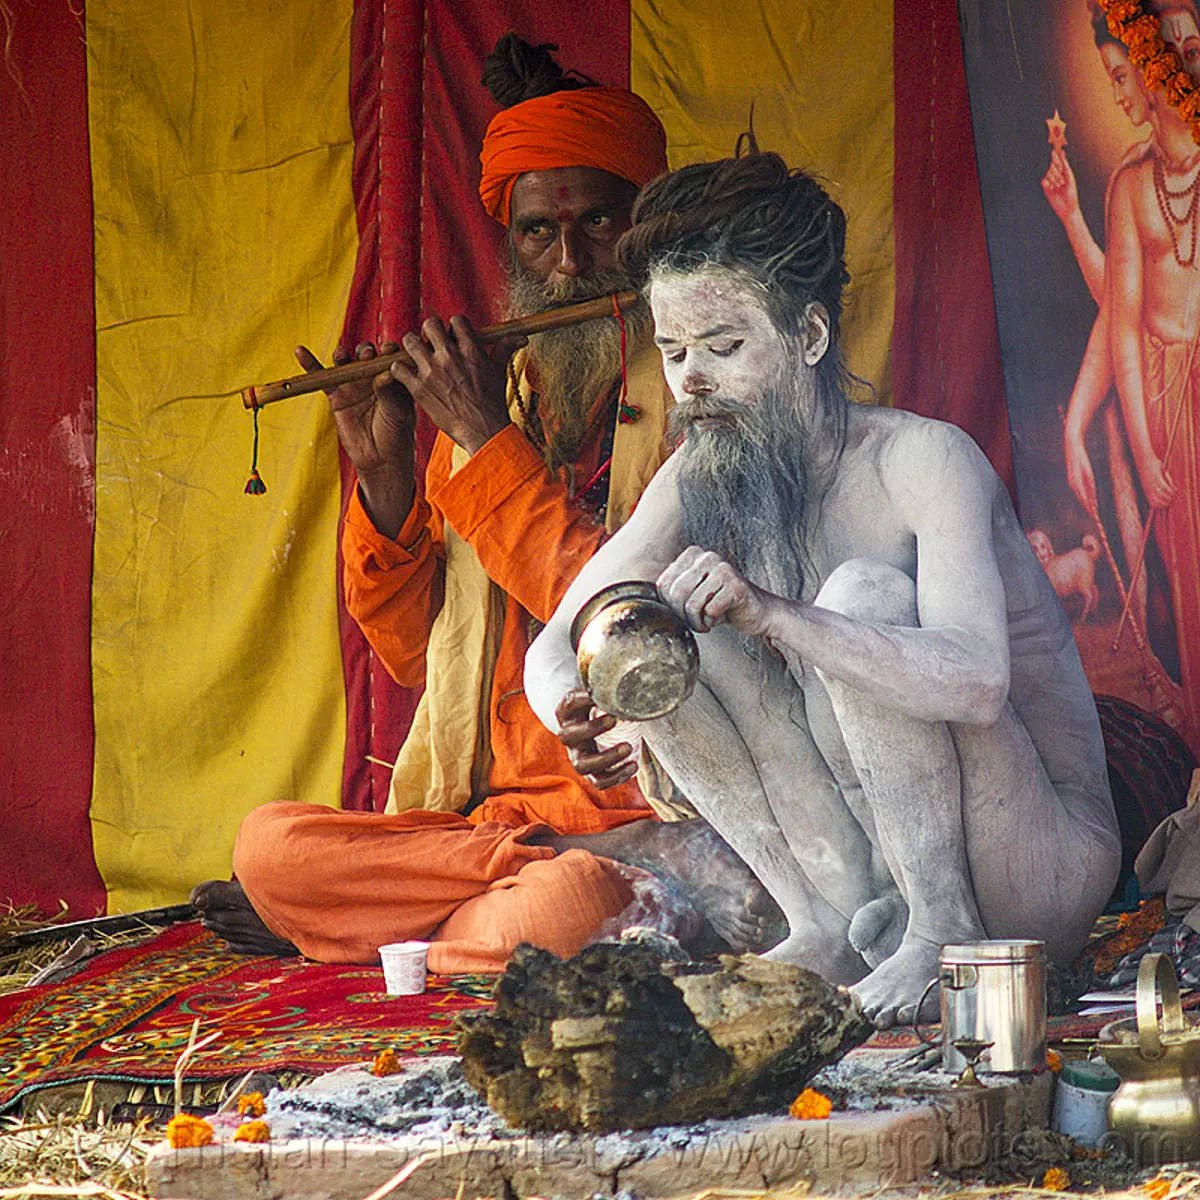 naked baba - naga sadhu with vibhuti holy ash (india), beard, bhagwa, bodypaint, bodypainted, dreadlocks, hindu pilgrimage, hinduism, holy ash, kumbh mela, men, naga babas, naga sadhus, orange color, paush purnima, pilgrims, playing the flute, sacred ash, saffron color, sitting, vibhuti, white ash